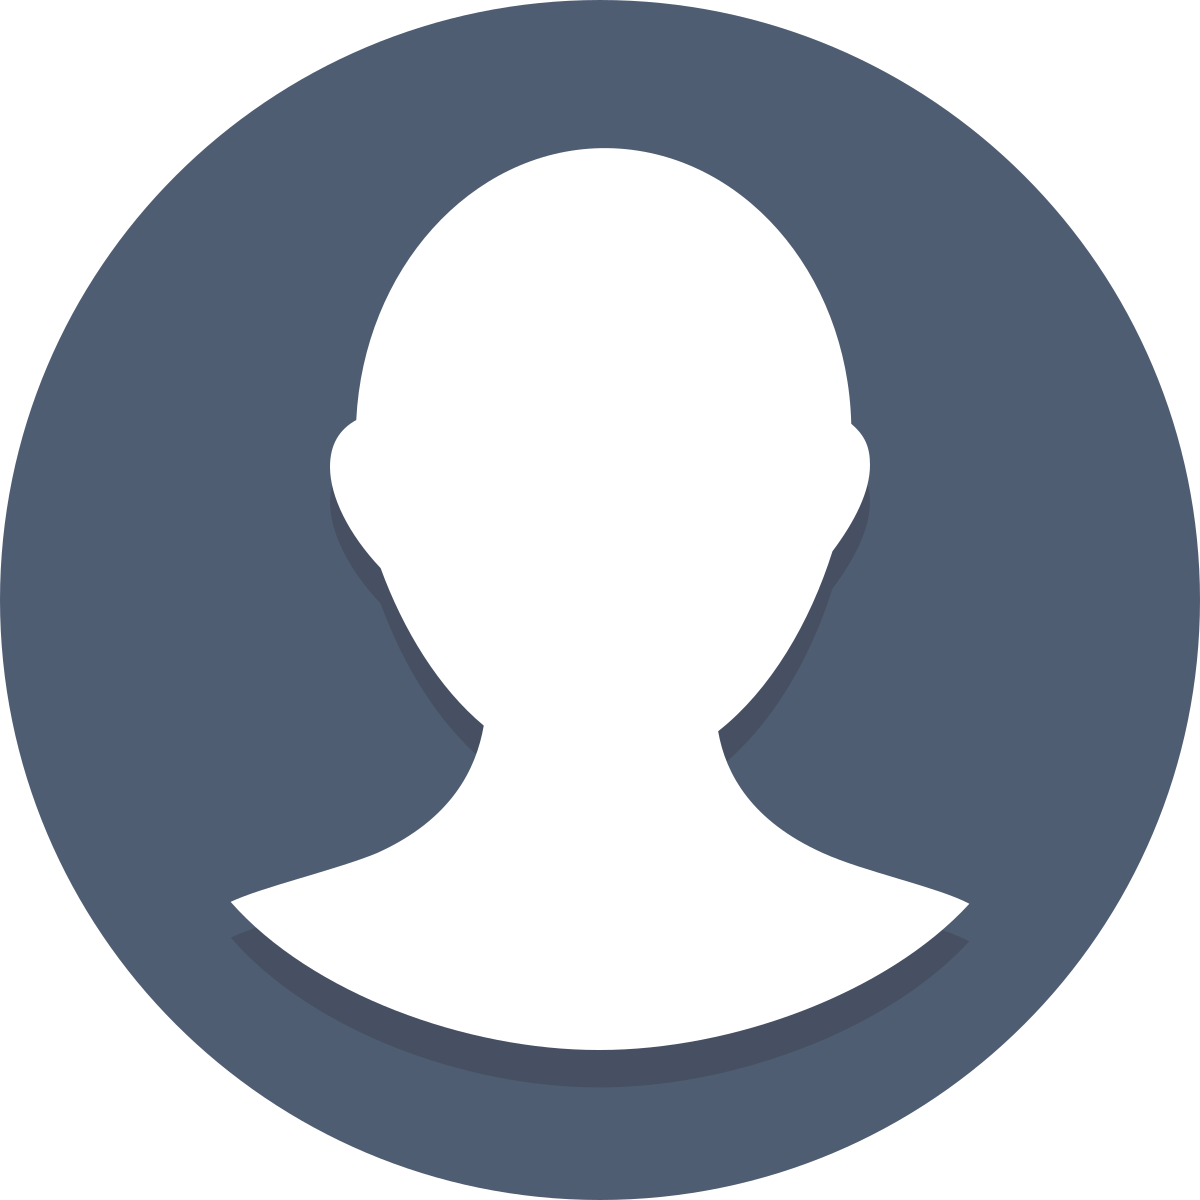 Информация профиль пользователя. Иконка профиля. Значок аватара. Круглый аватар. Изображение пользователя.